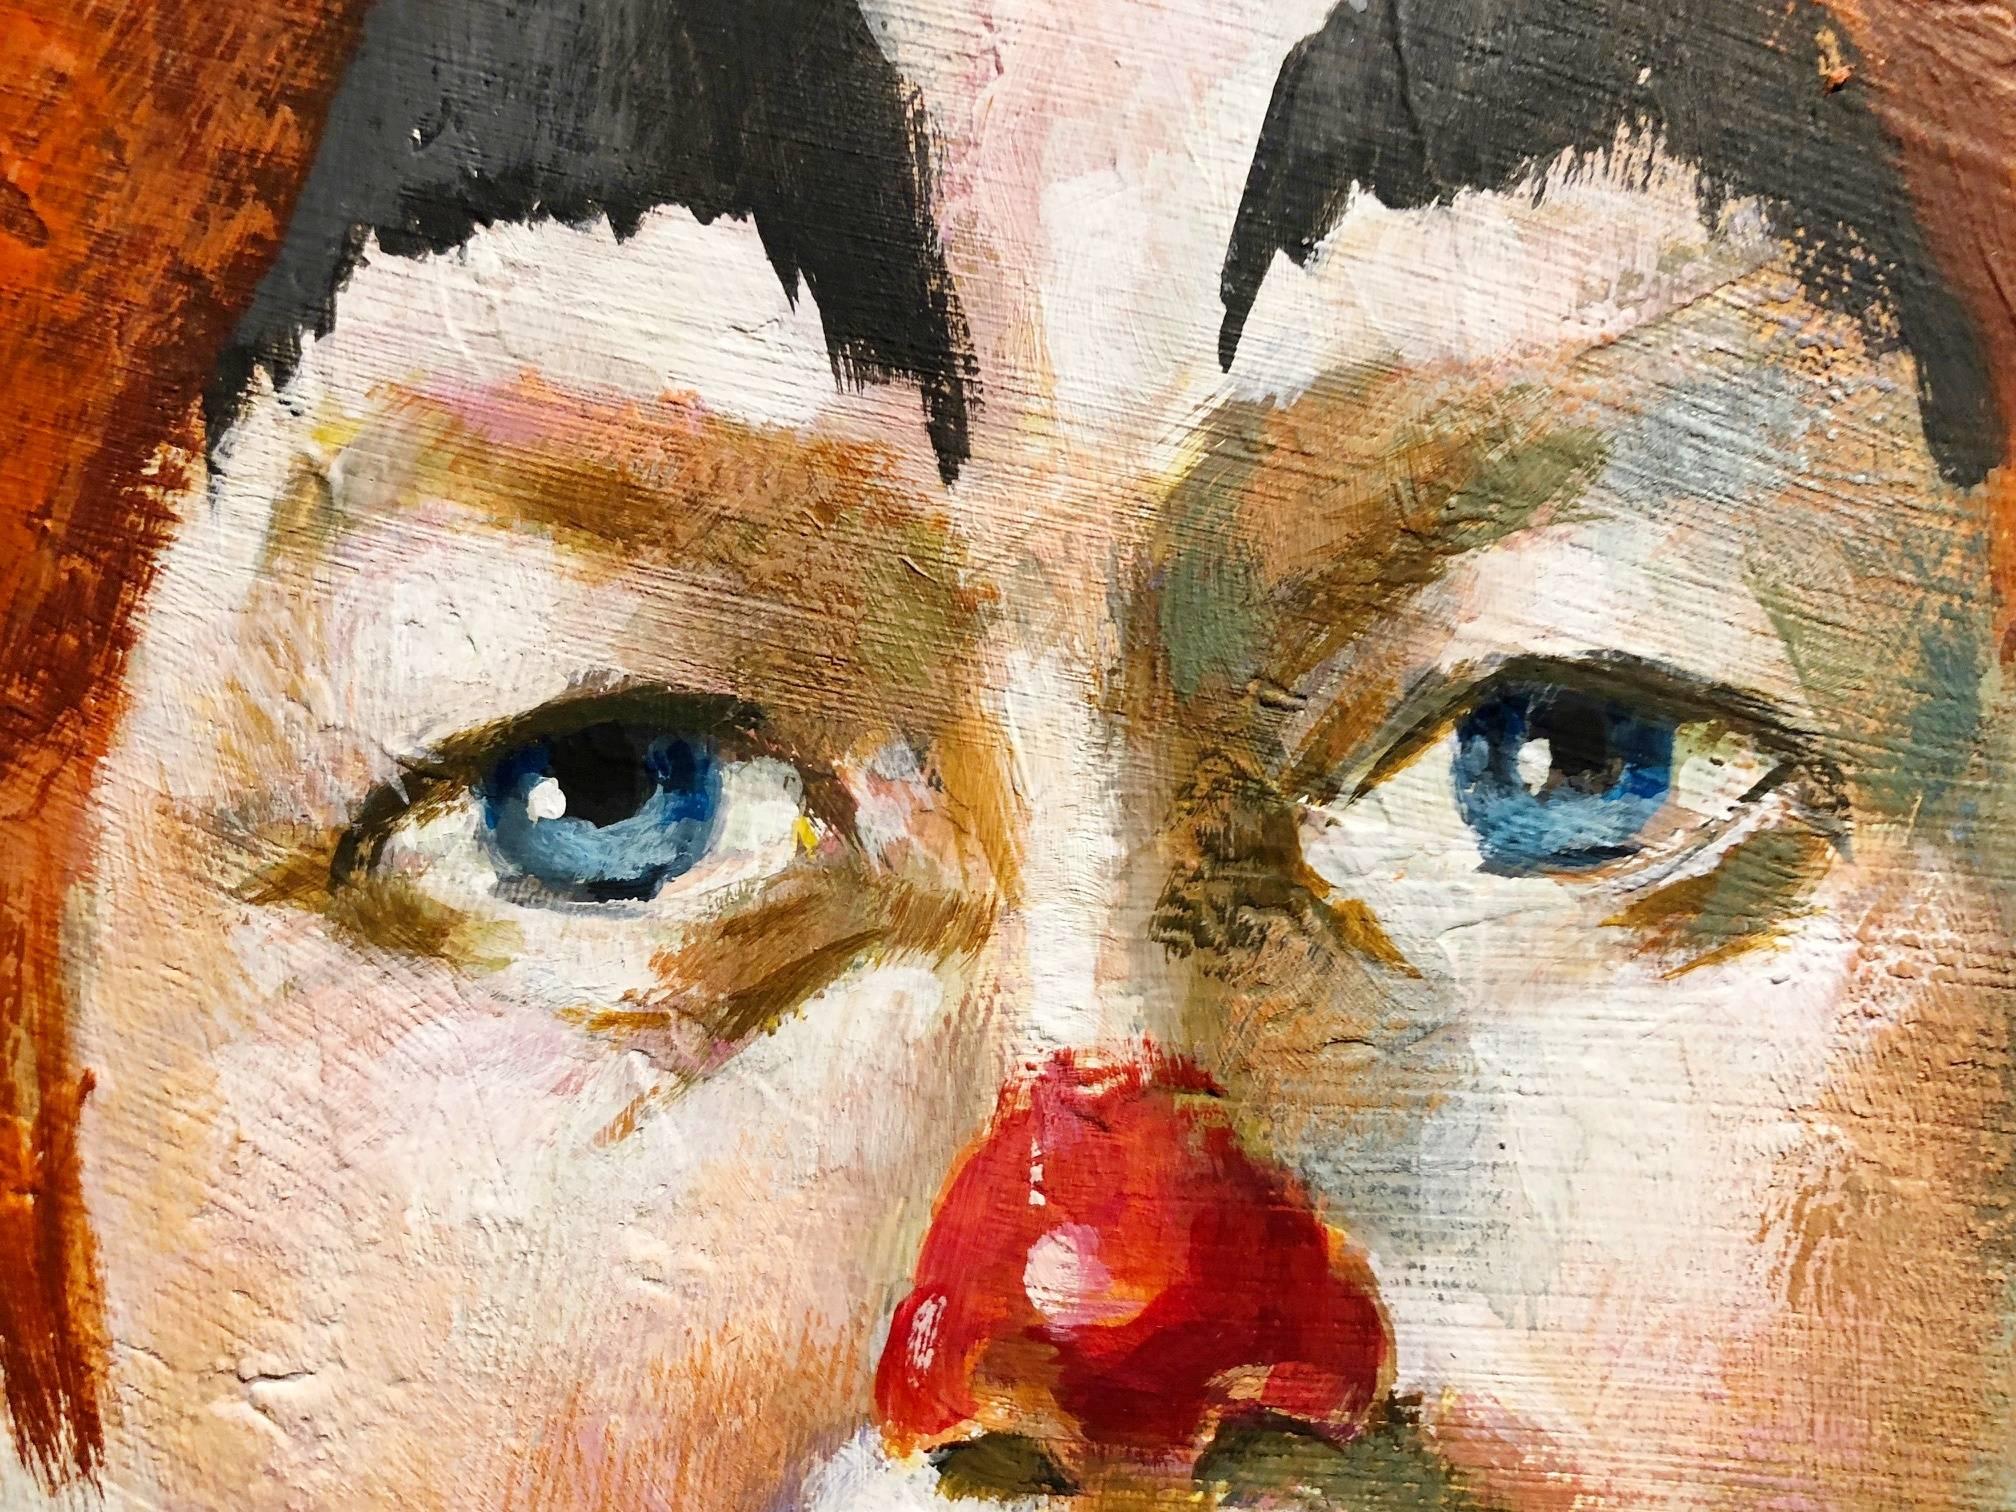 clown portrait paintings